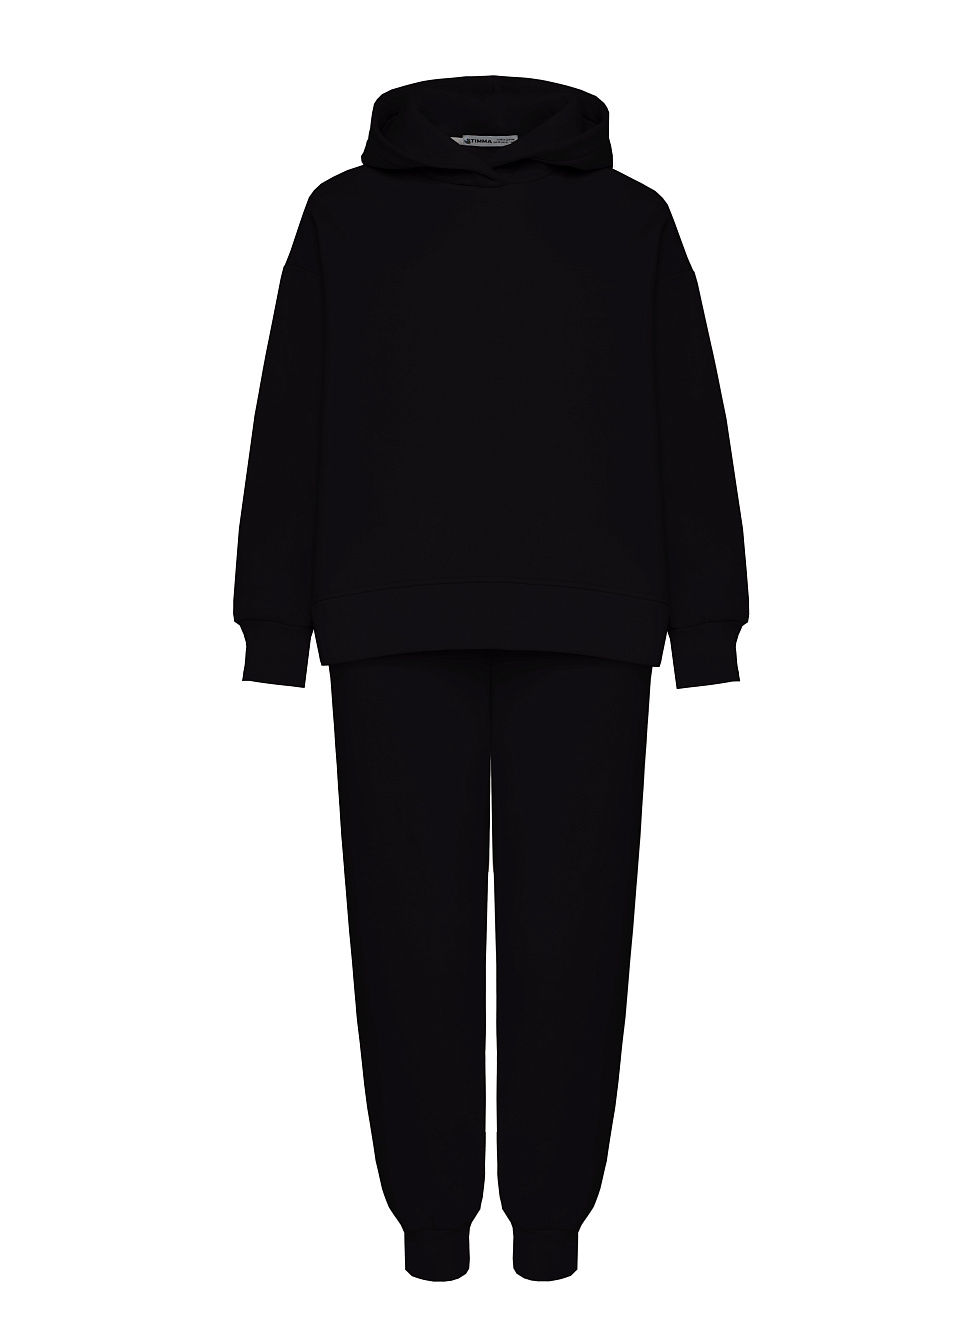 Жіночий спортивний костюм Stimma Мілен, колір - чорний